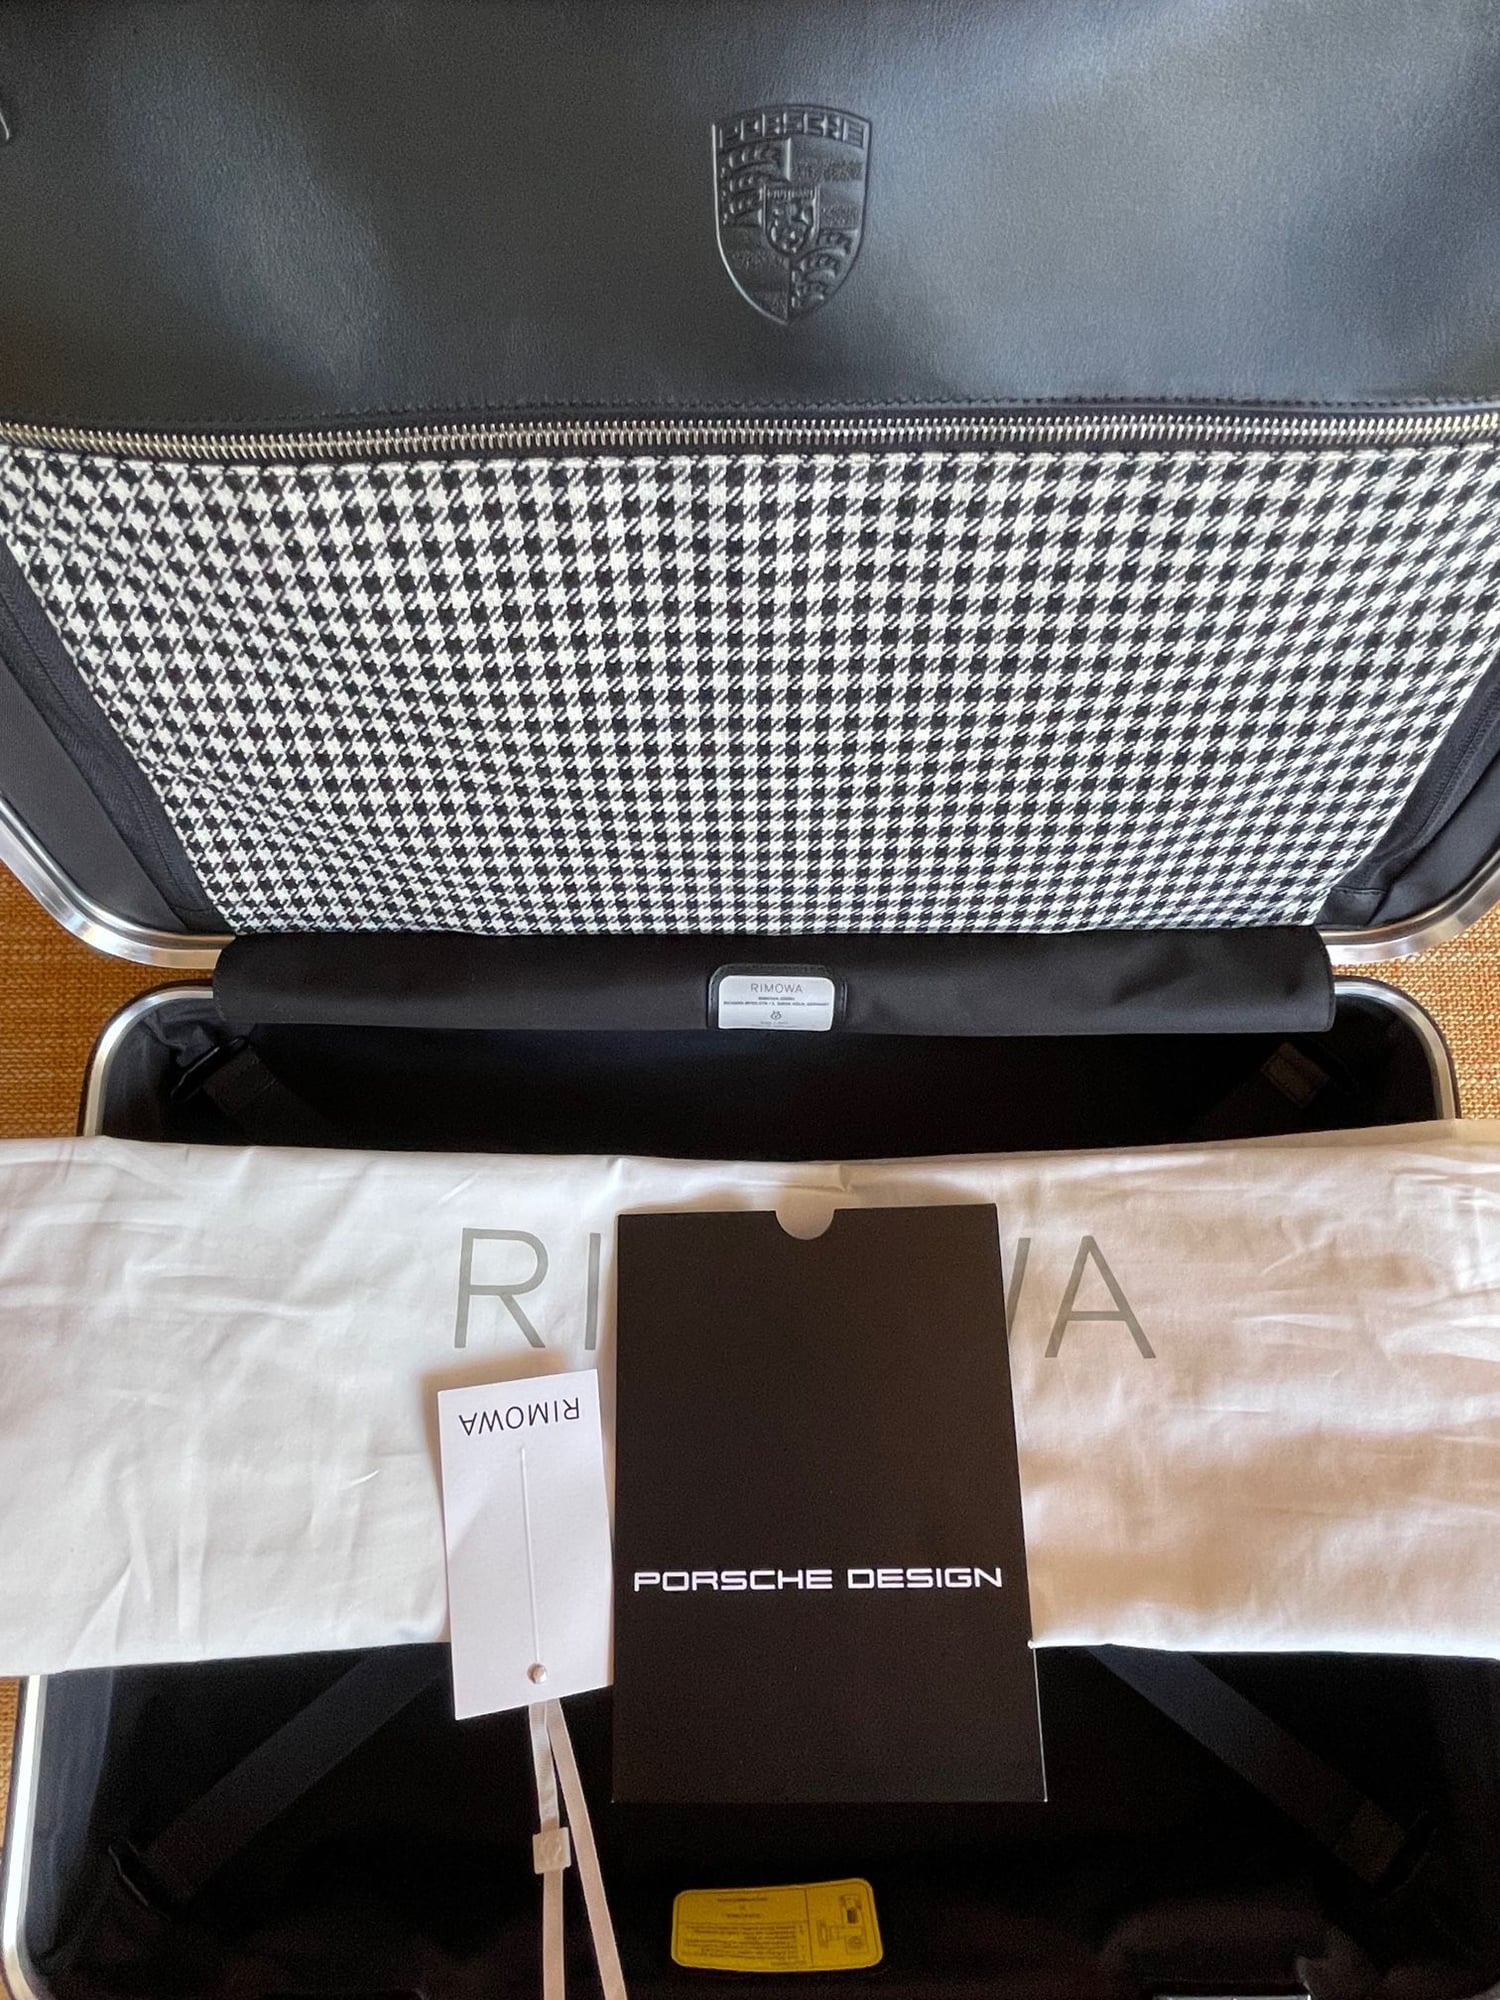 Rimowa and Porsche present the Pepita suitcase – Roadness